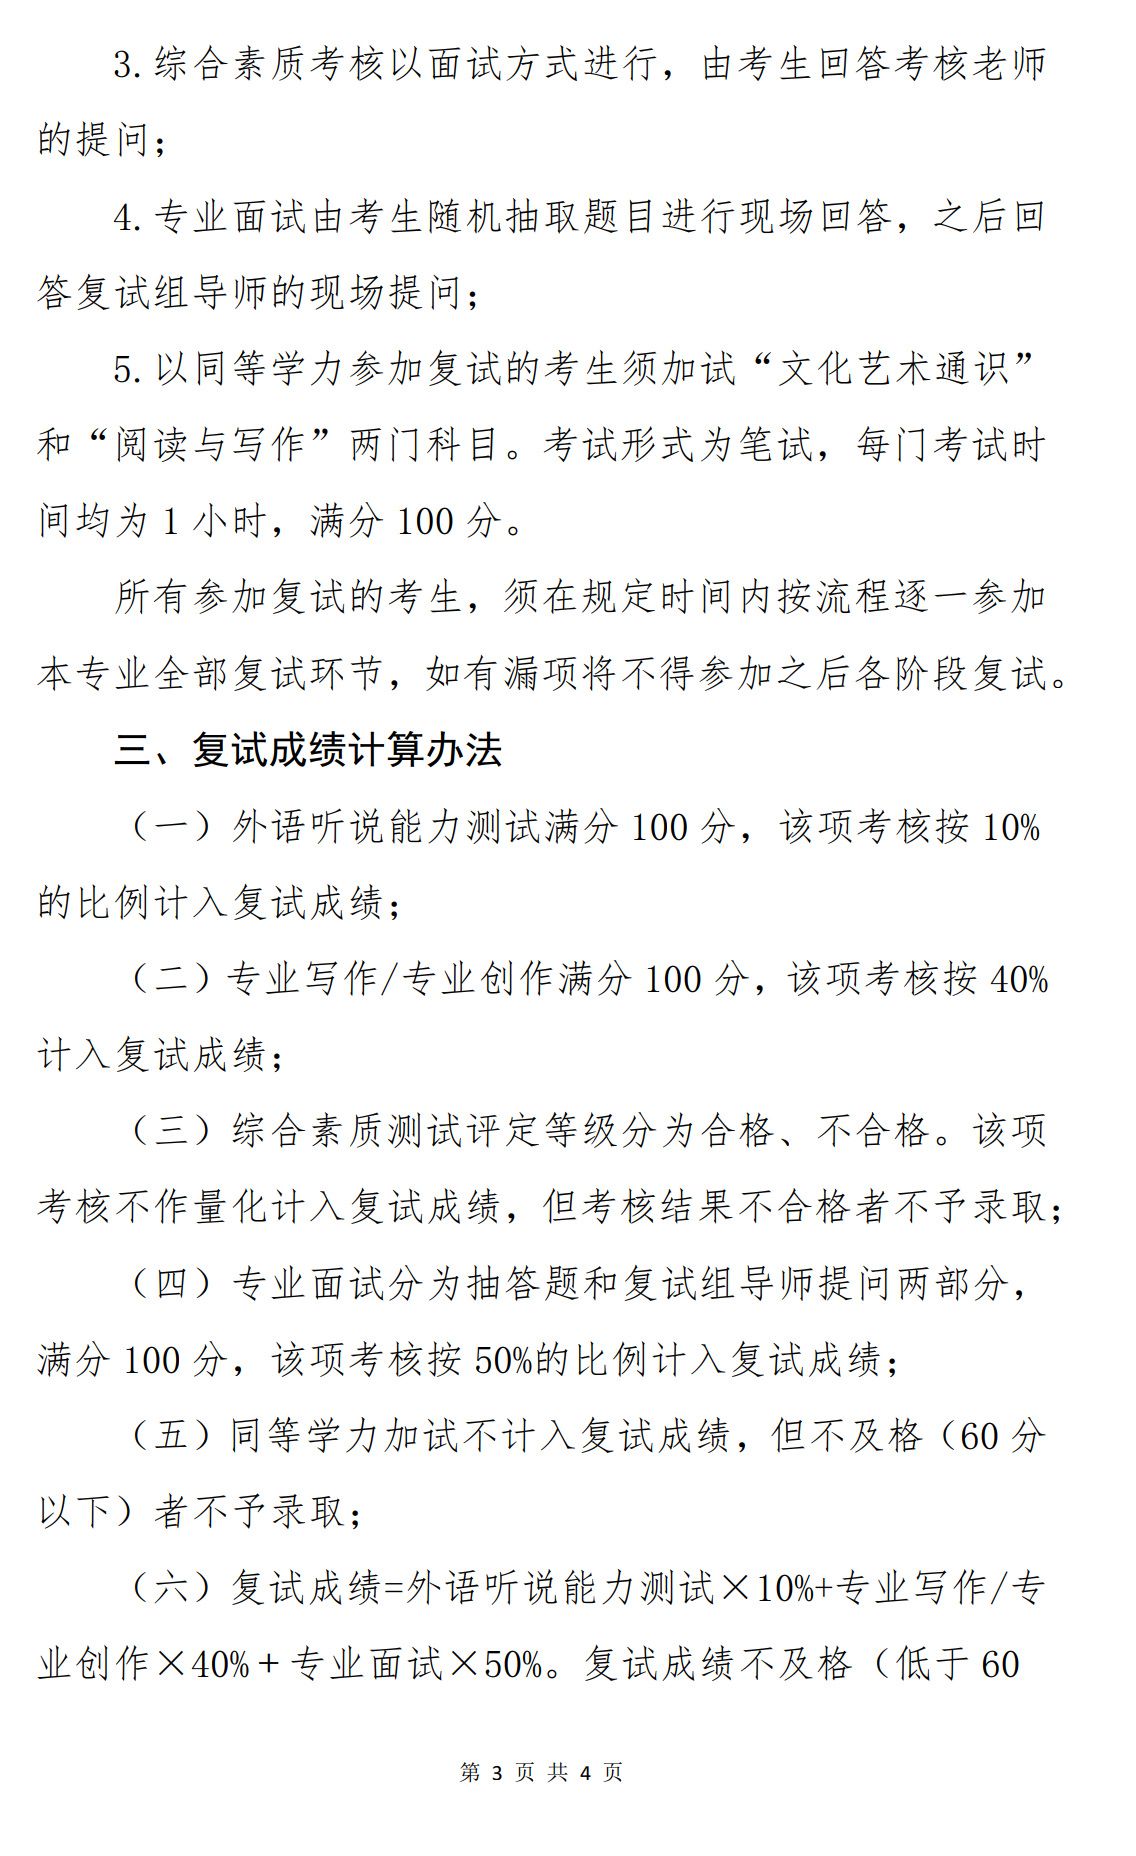 2024年中国艺术研究院舞蹈硕士研究生招生考试复试公告